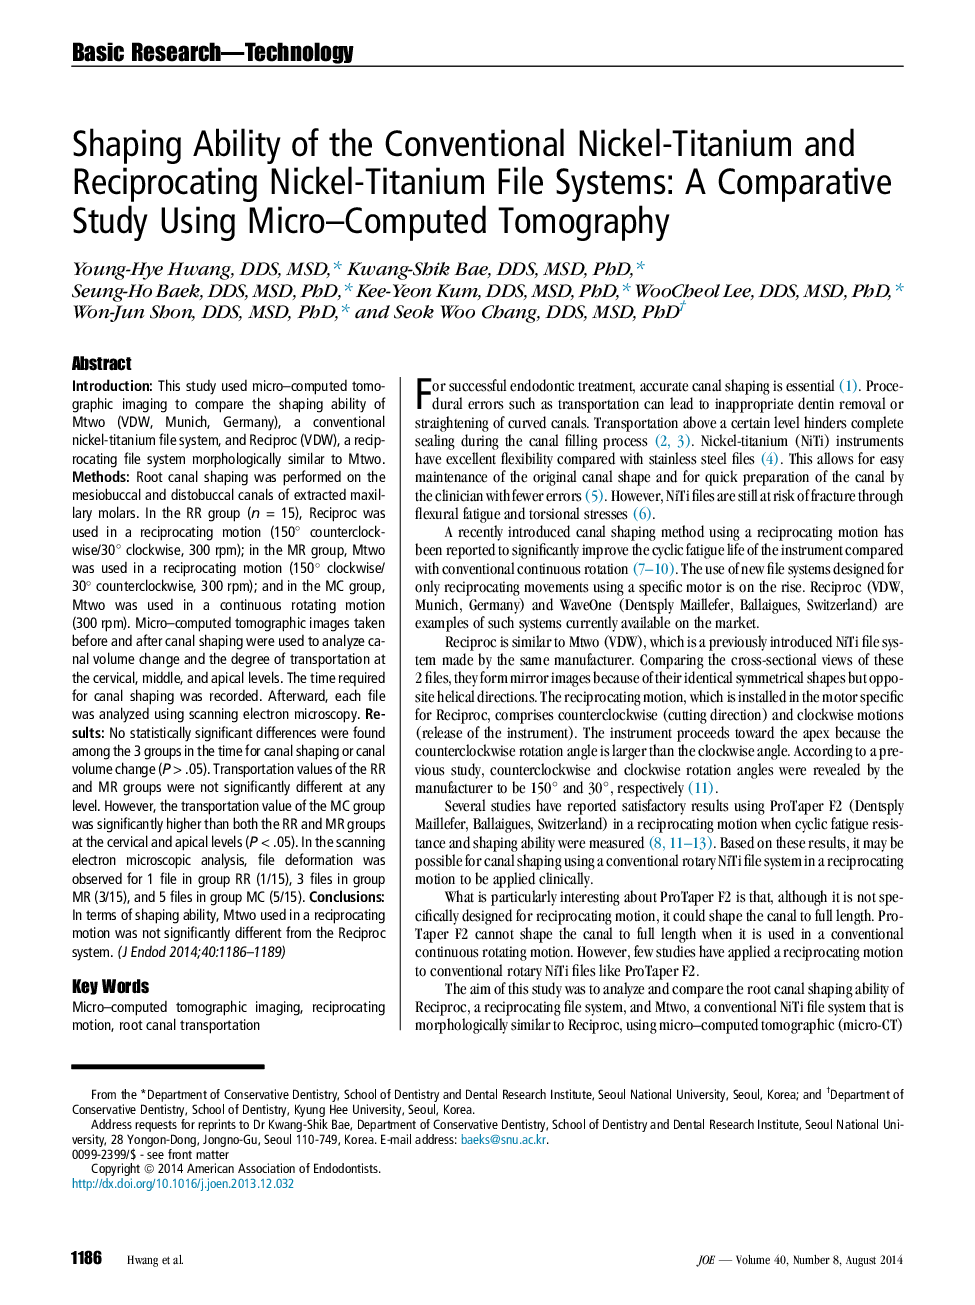 توانایی شکل دادن به سیستم های فایل نیکل تیتانیوم و تیتانیوم متداول: یک مطالعه مقایسه ای با استفاده از میکروسکوپ تامپوگرافی کامپیوتری 